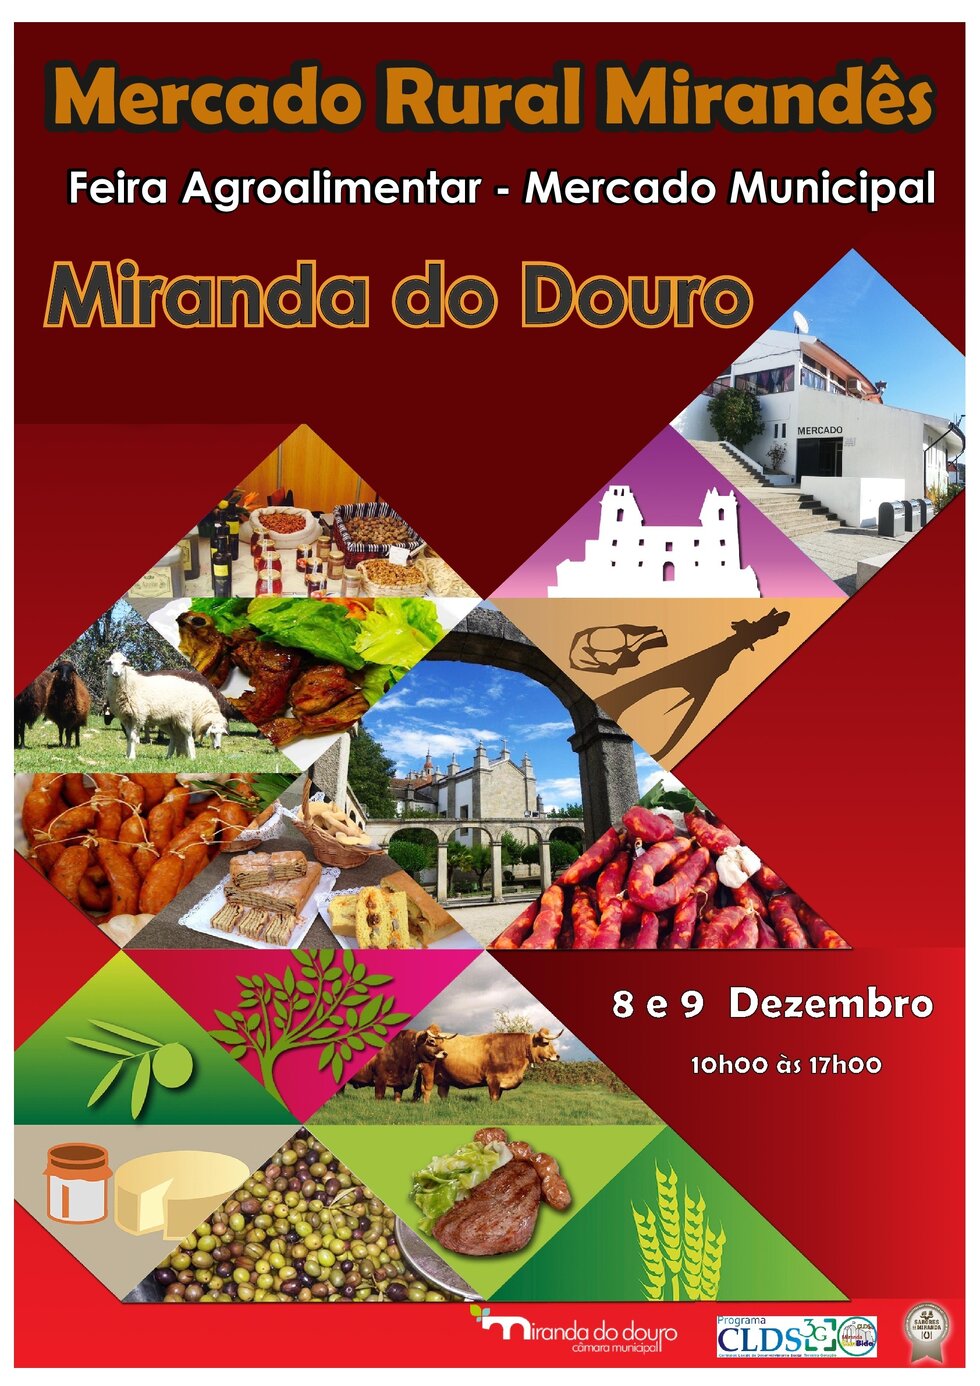 Mercado rural 2018 001  1  1 980 2500